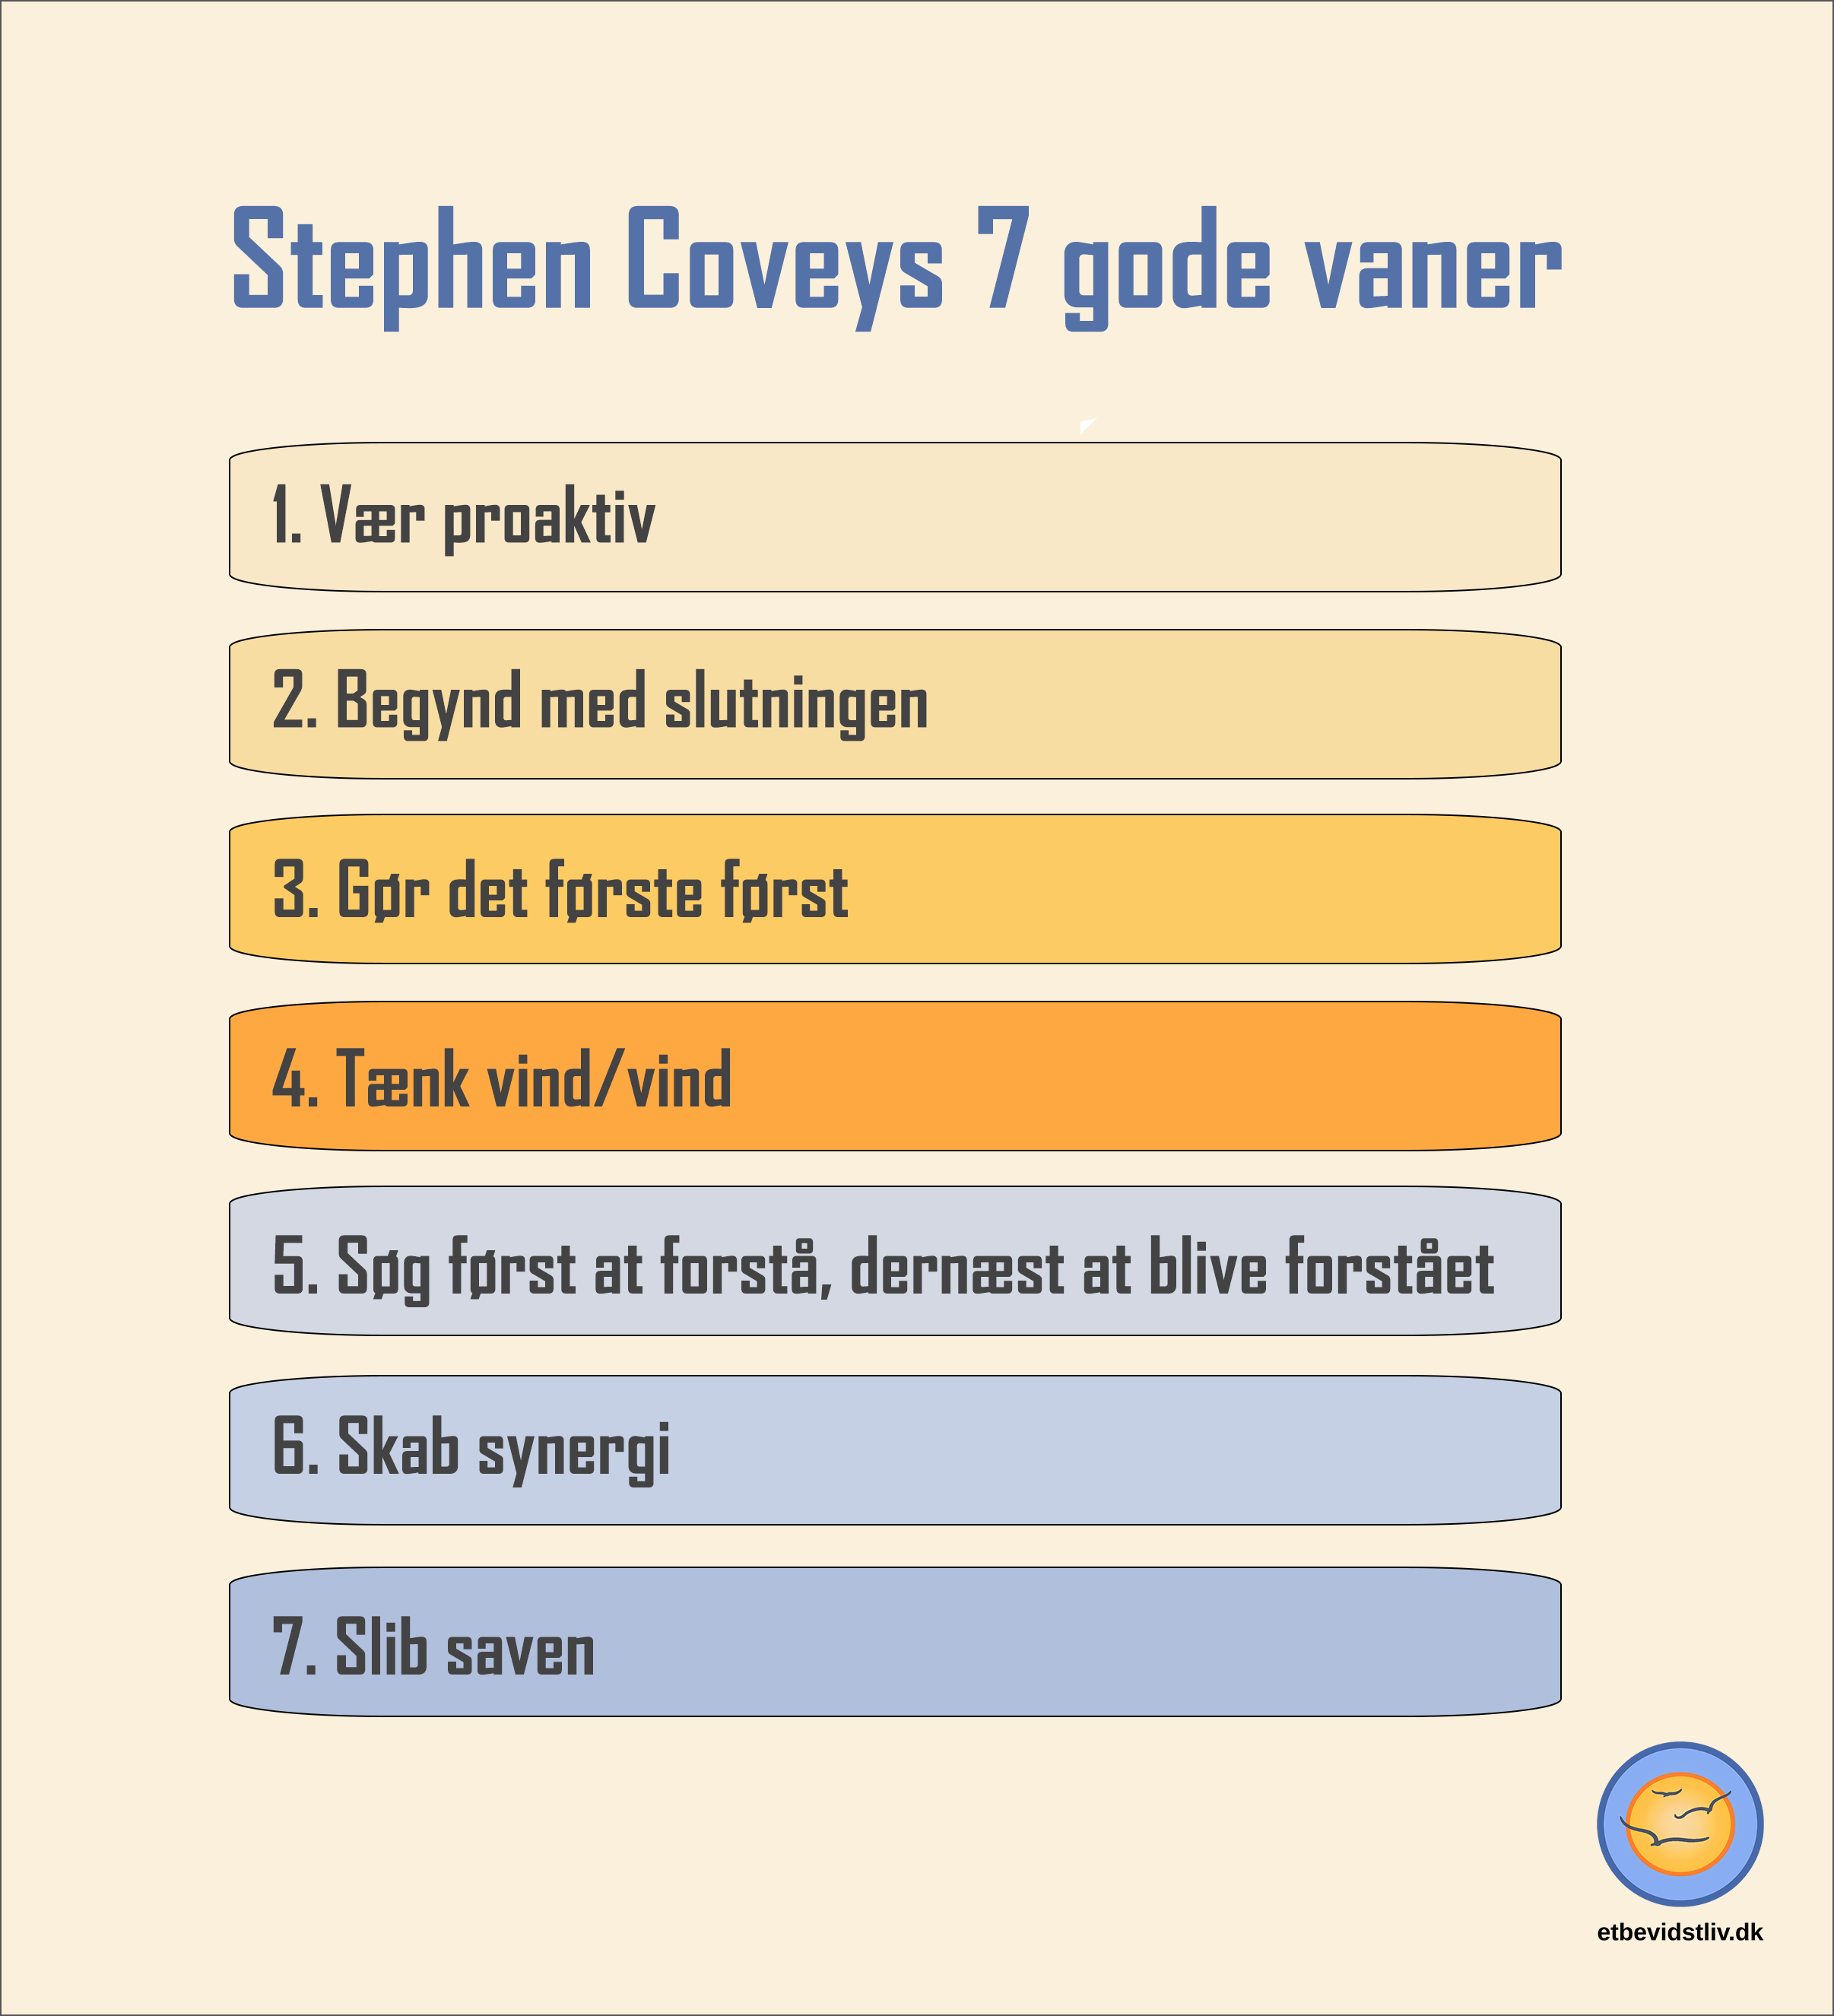 Model over Stephen Coveys 7 gode vaner. 